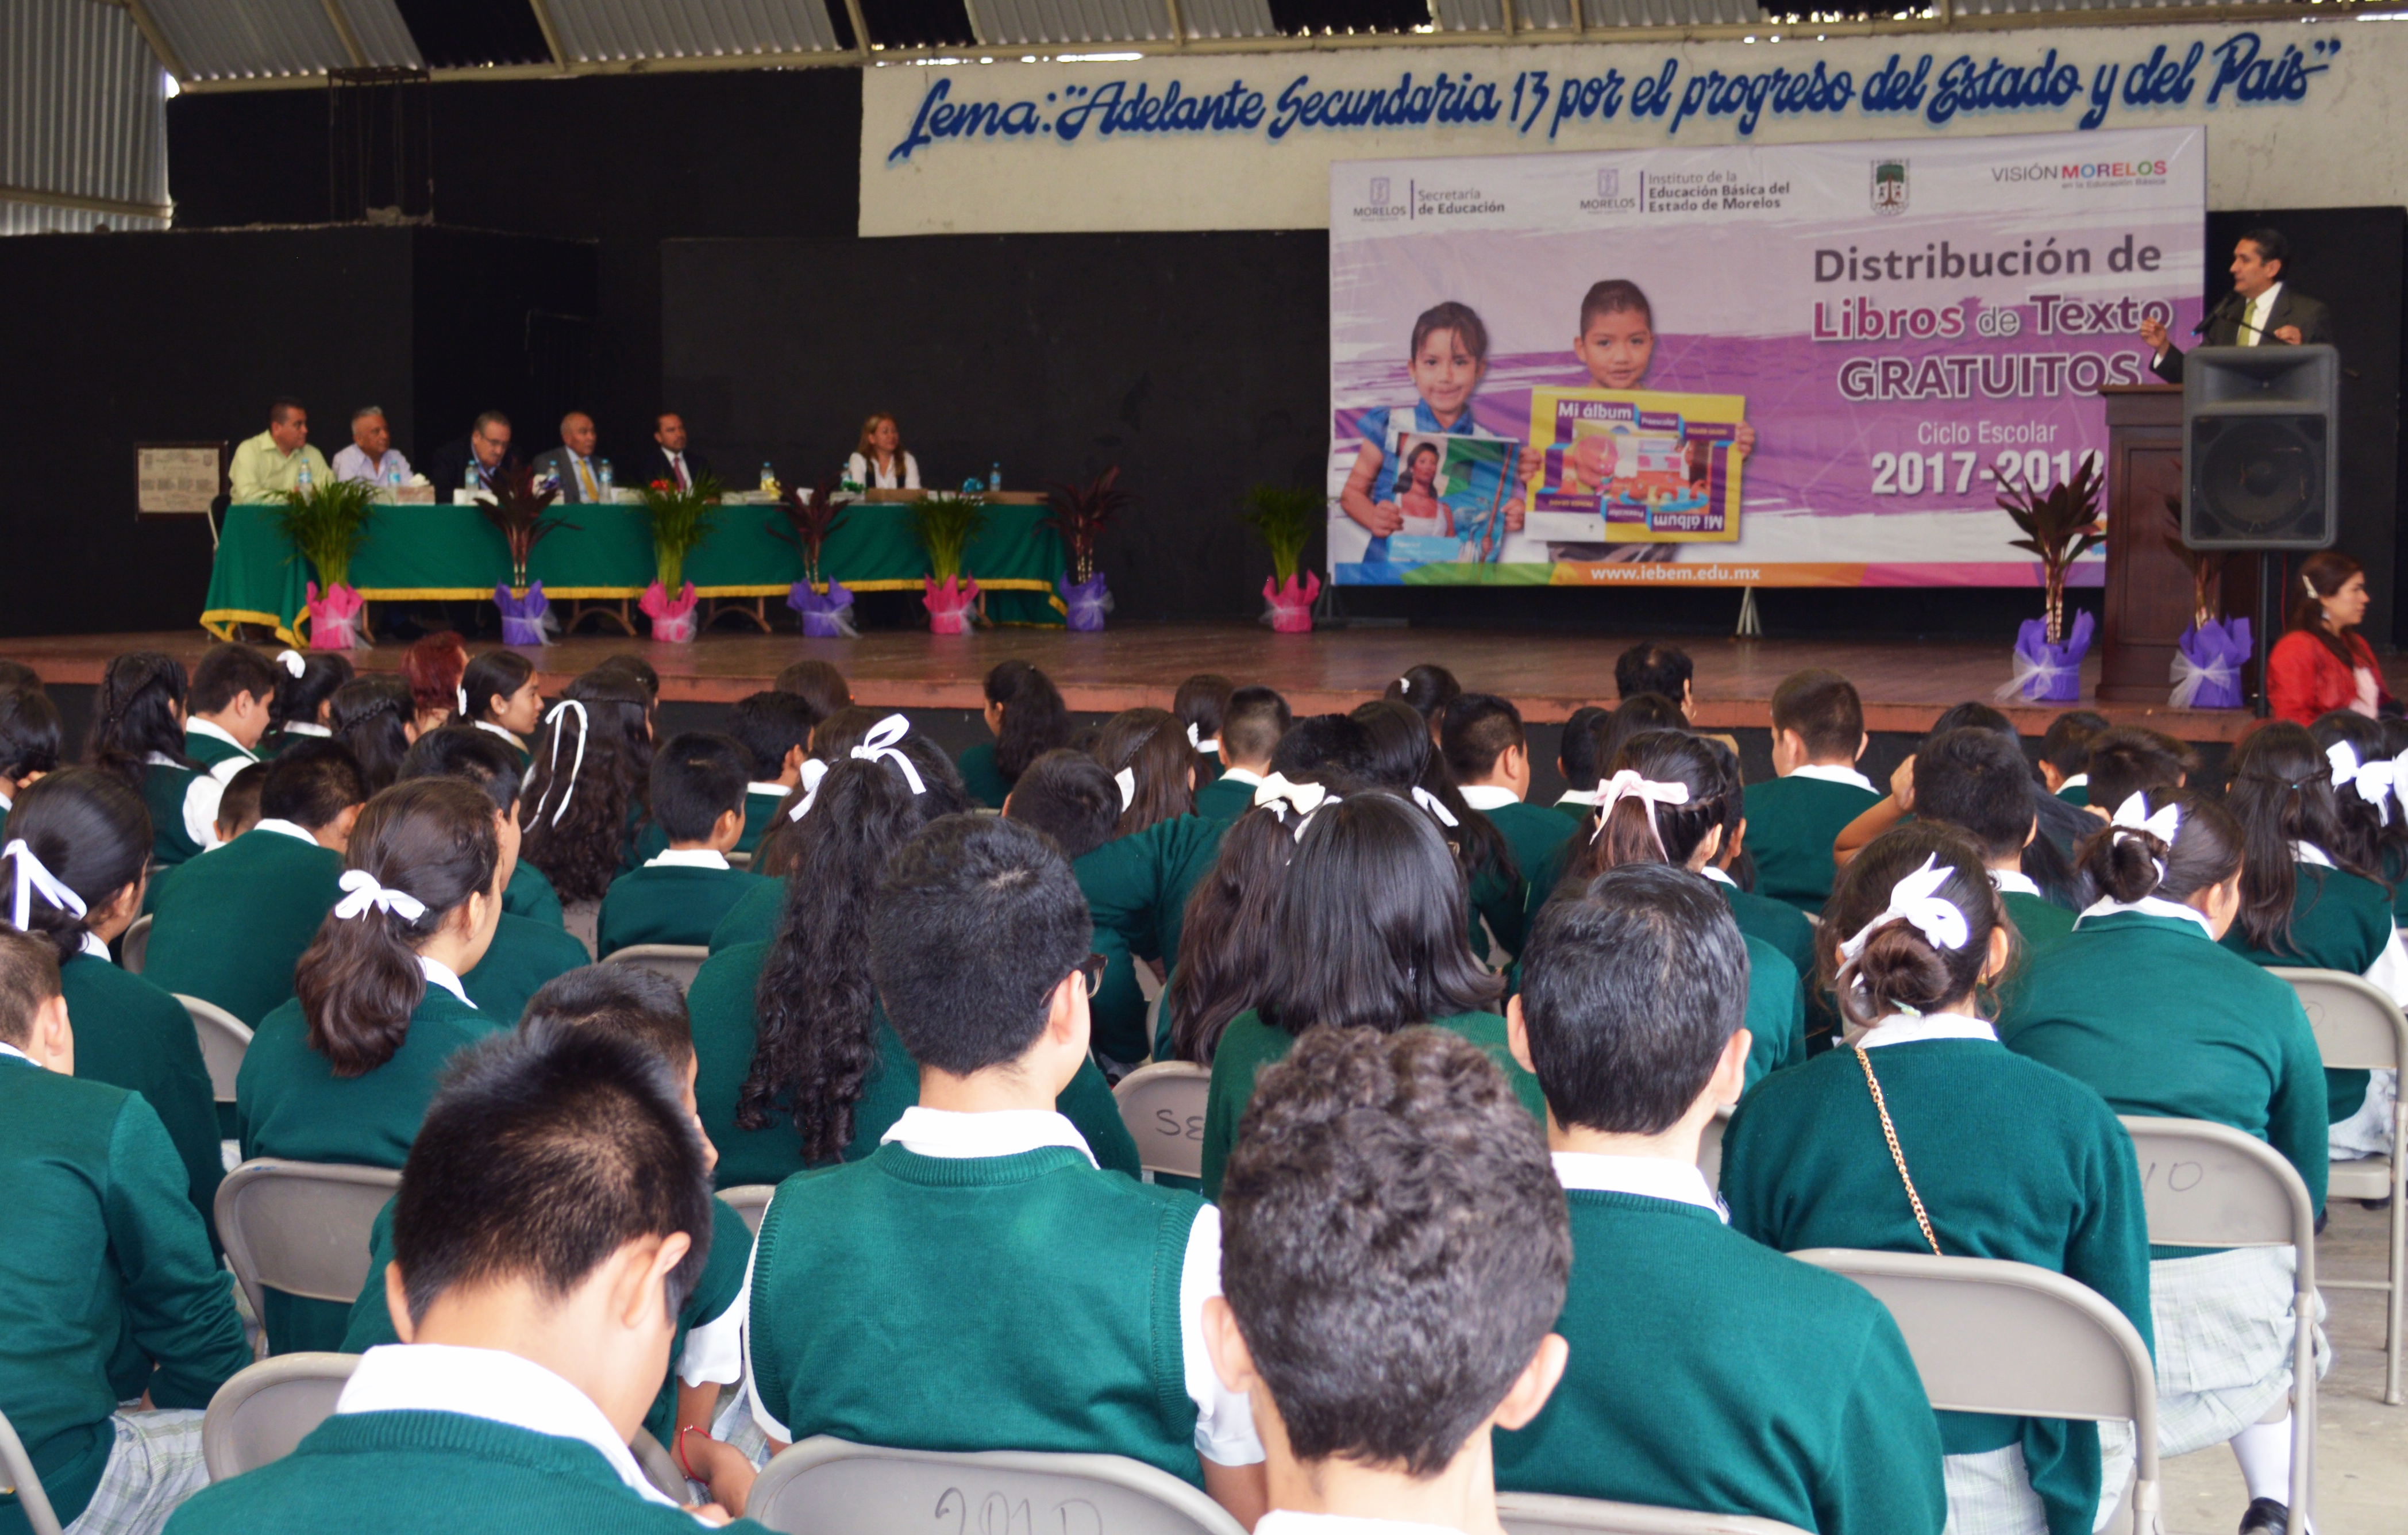 Banderazo de Distribución de Libros de Texto Gratuitos. Cuernavaca, Morelos  Ciclo escolar 2017 -2018 